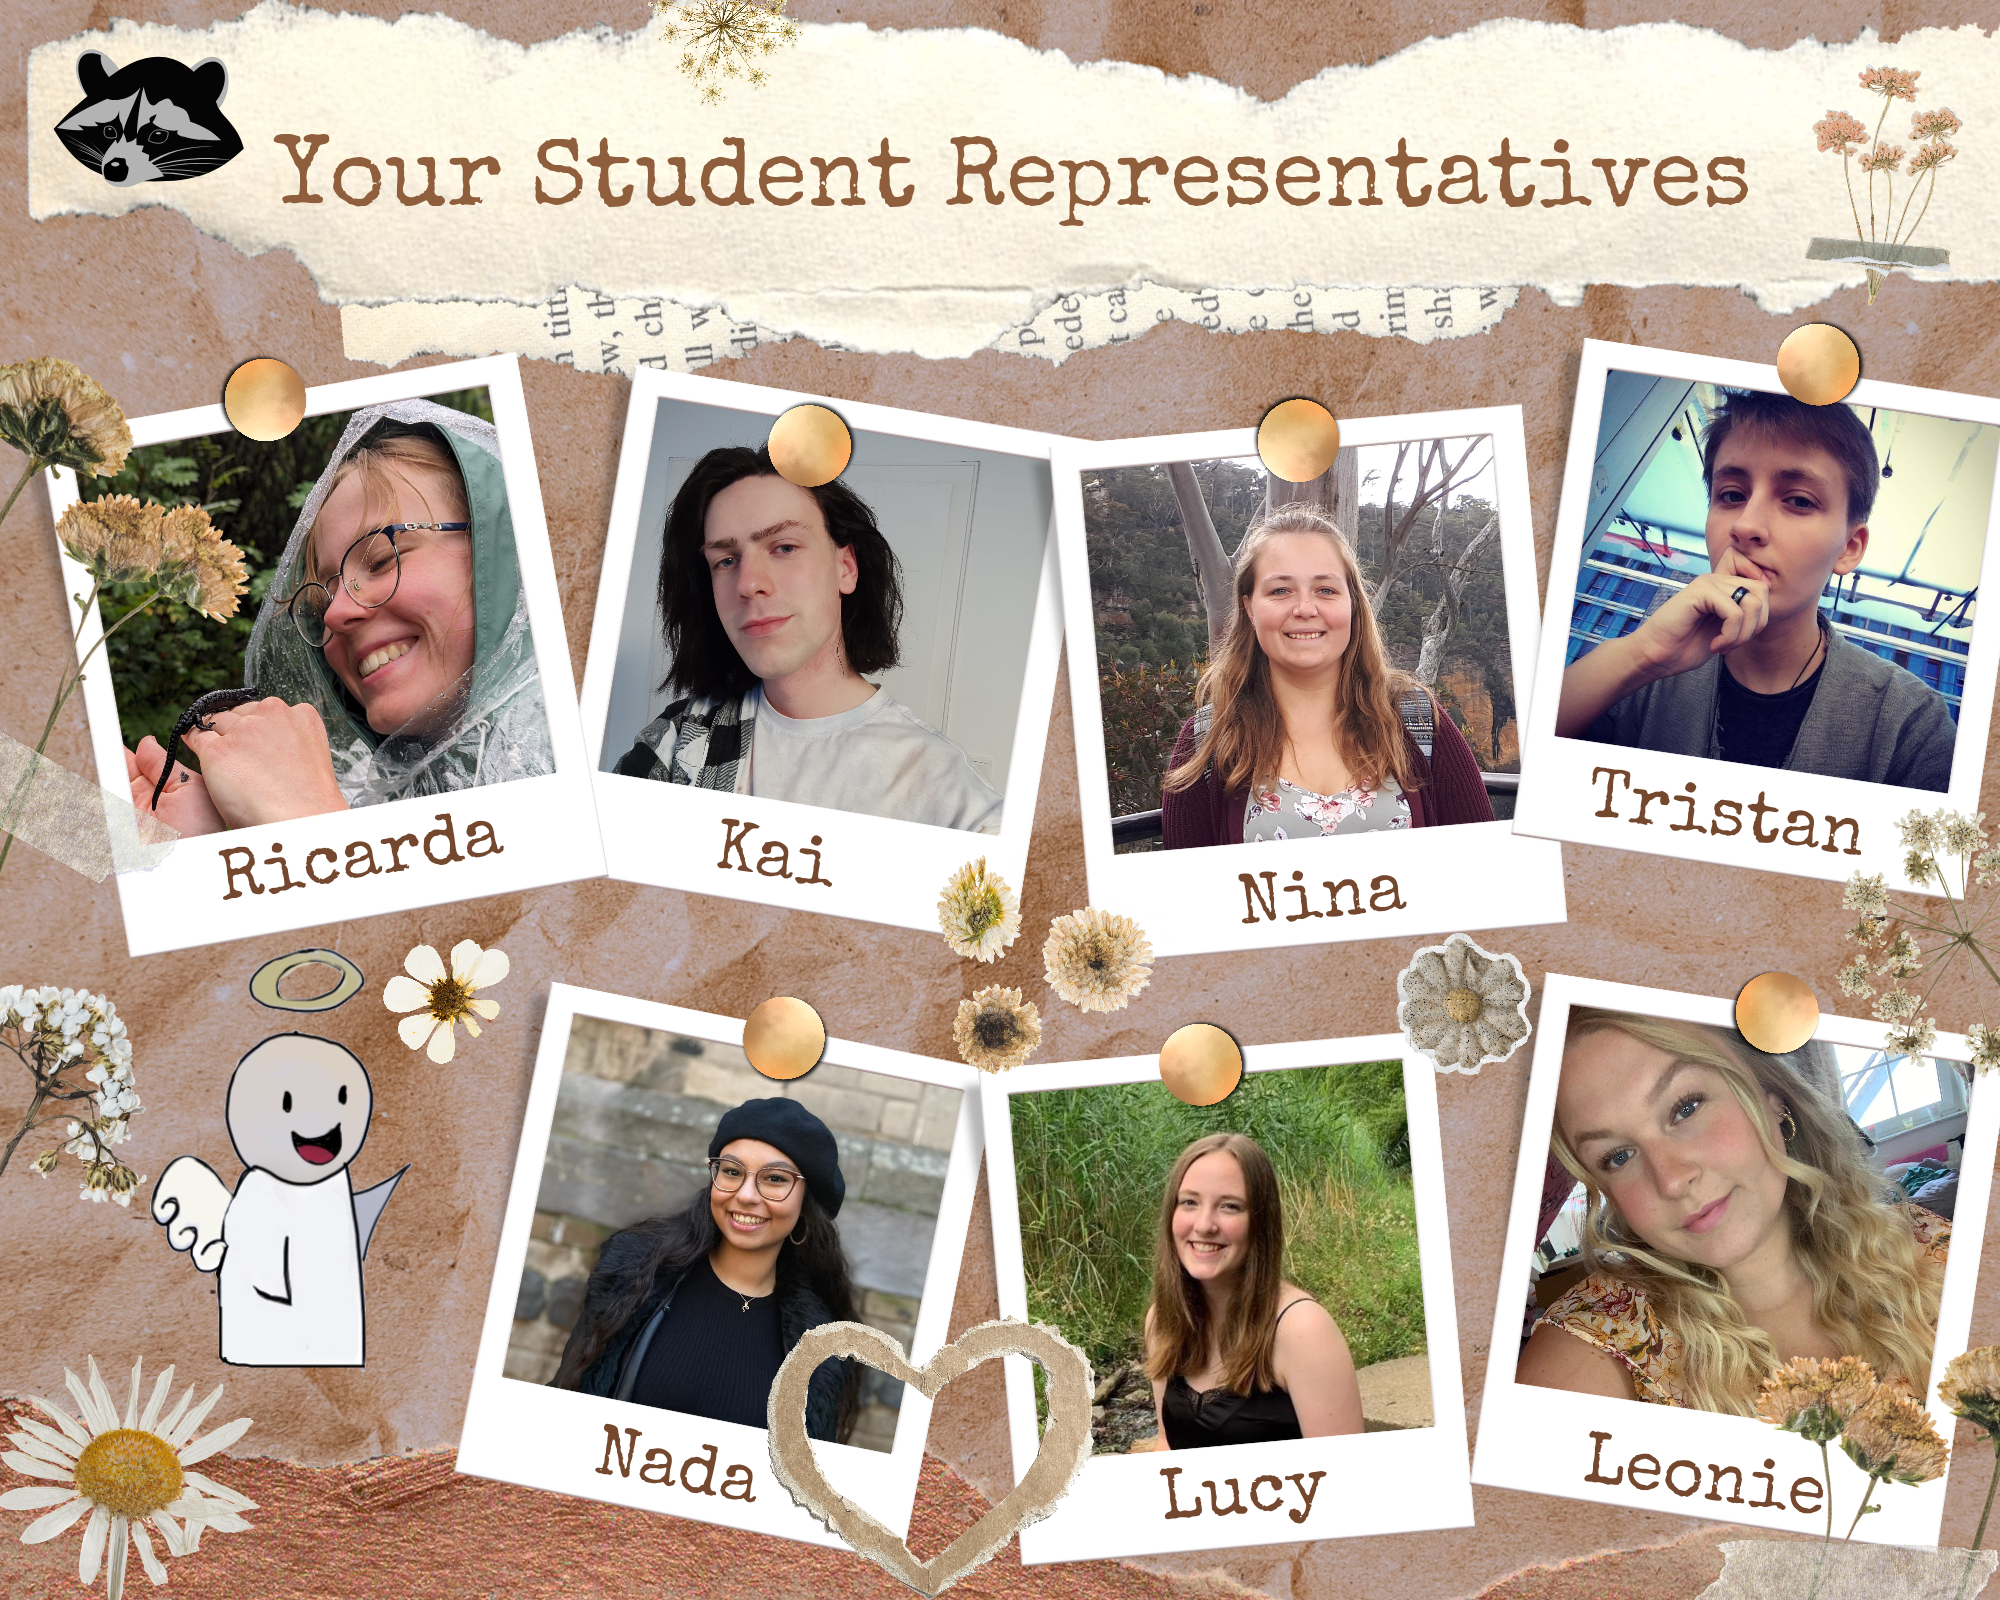 Eine Collage mit dem Titel Your Student Representatives, auf dem sieben personen zu sehen sind. In der ersten Reihen sieht man Ricarda, Kai, Nina und Tristan, in der zweiten Reihe Nada, Lucy und Leonie.